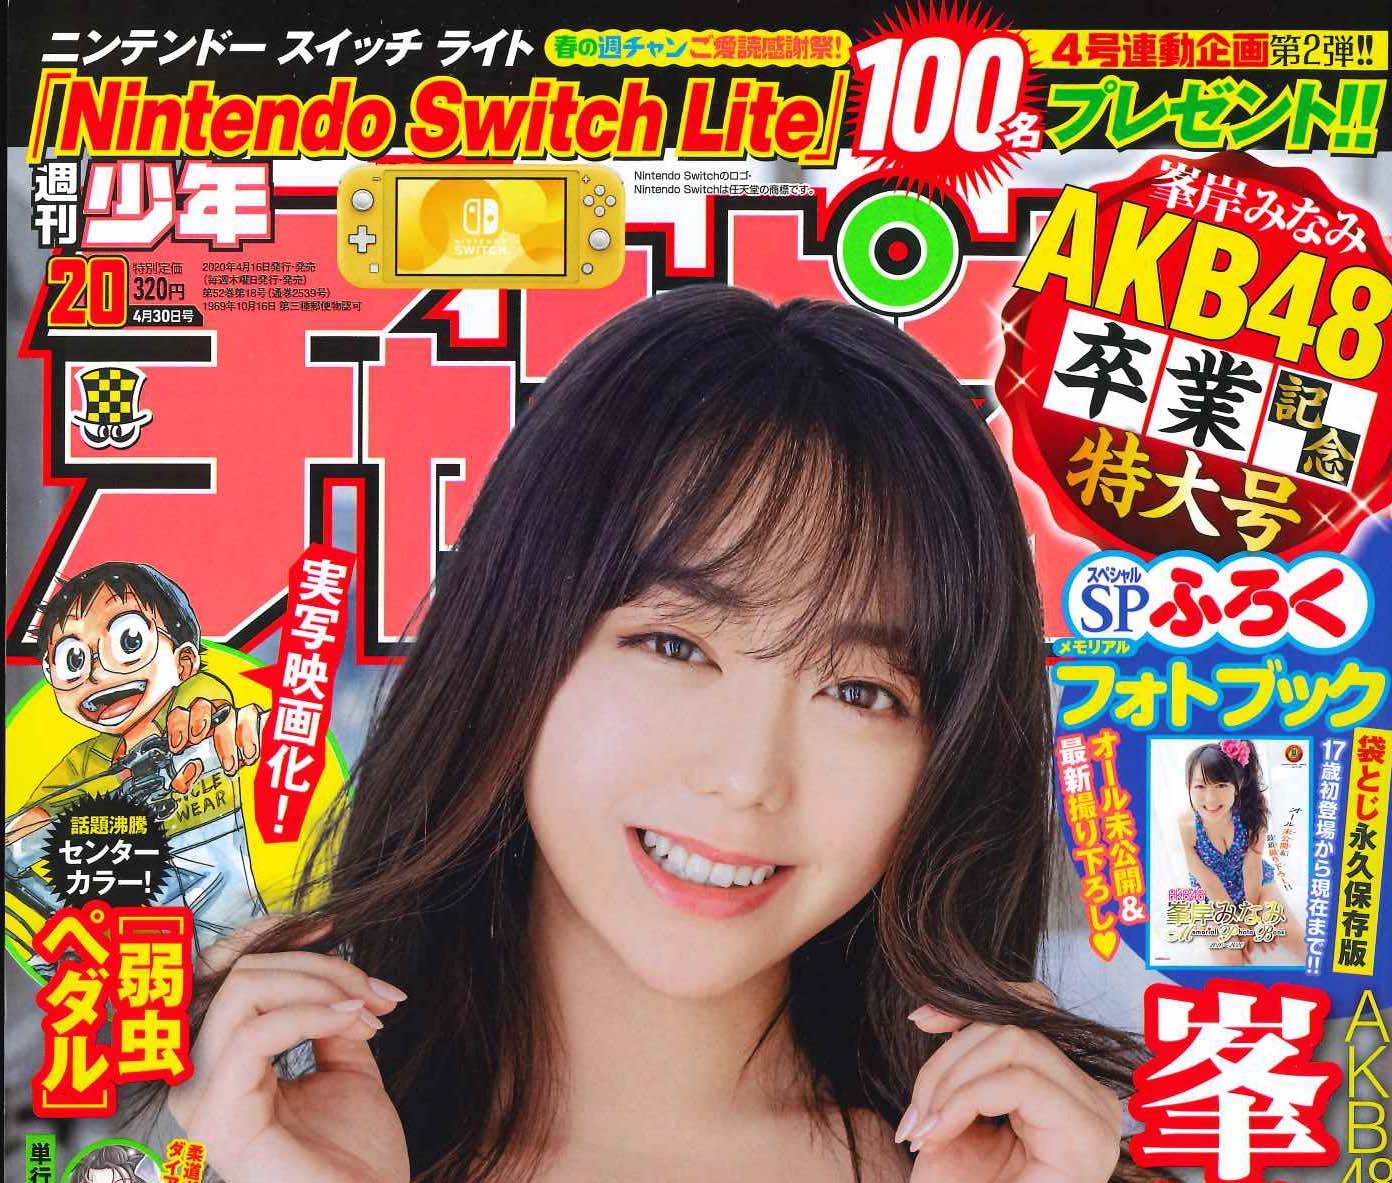 週刊少年チャンピオン20号 4.16発売! Nintendo Switch Liteが当たる企画も!